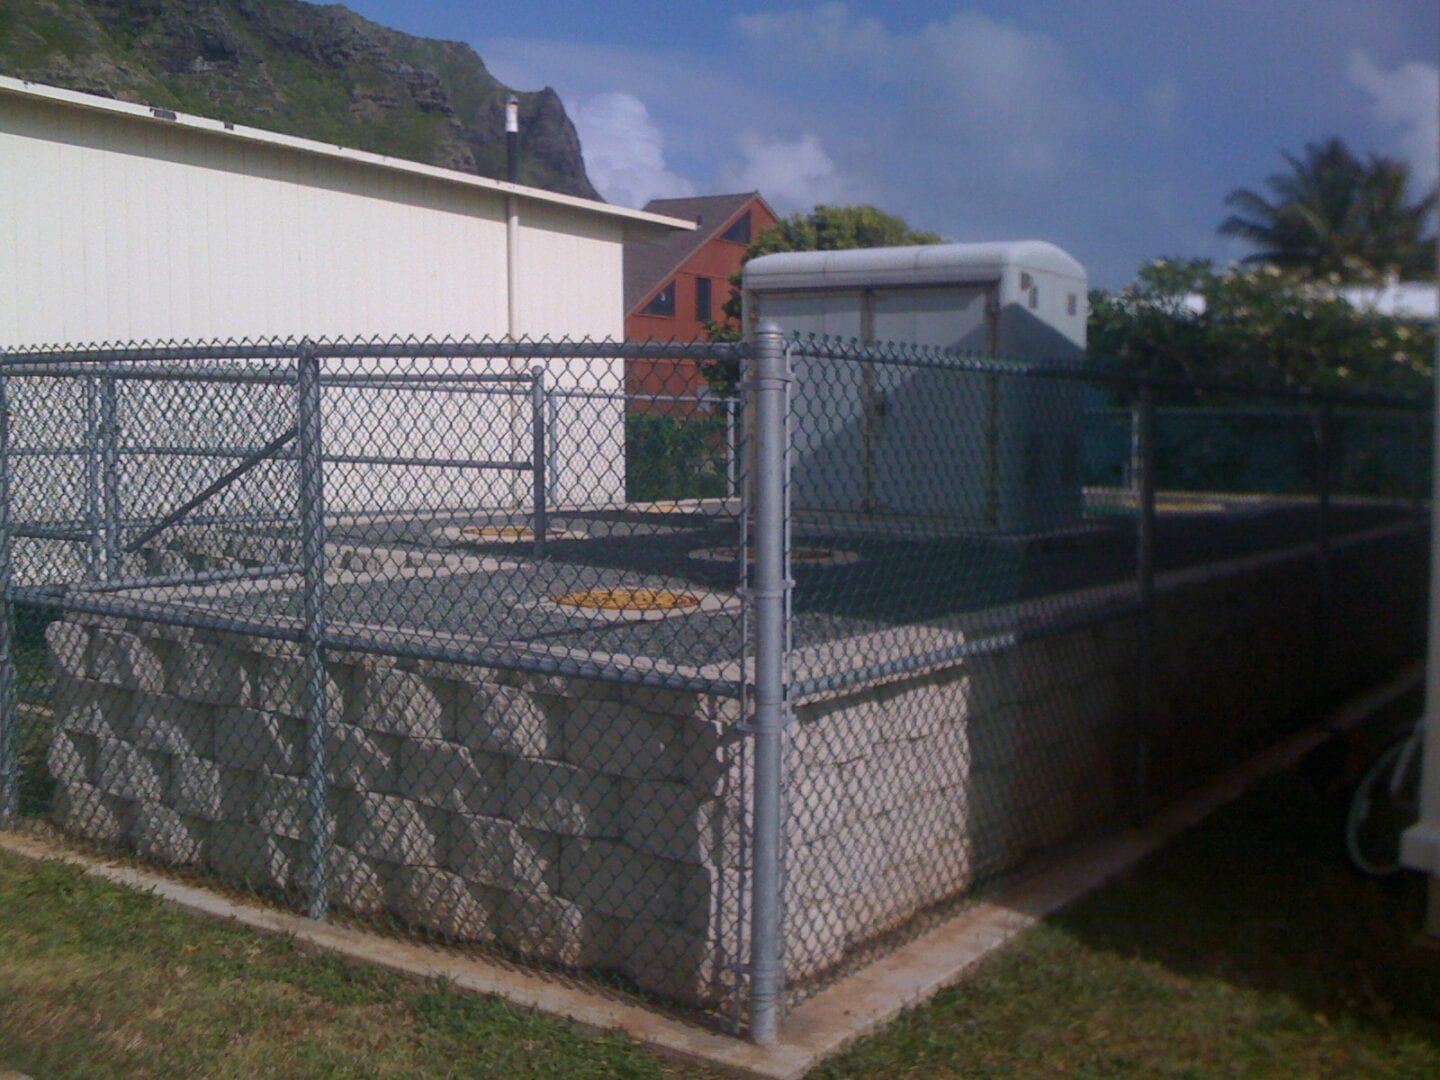 Wastewater treatment in Kaaawa school